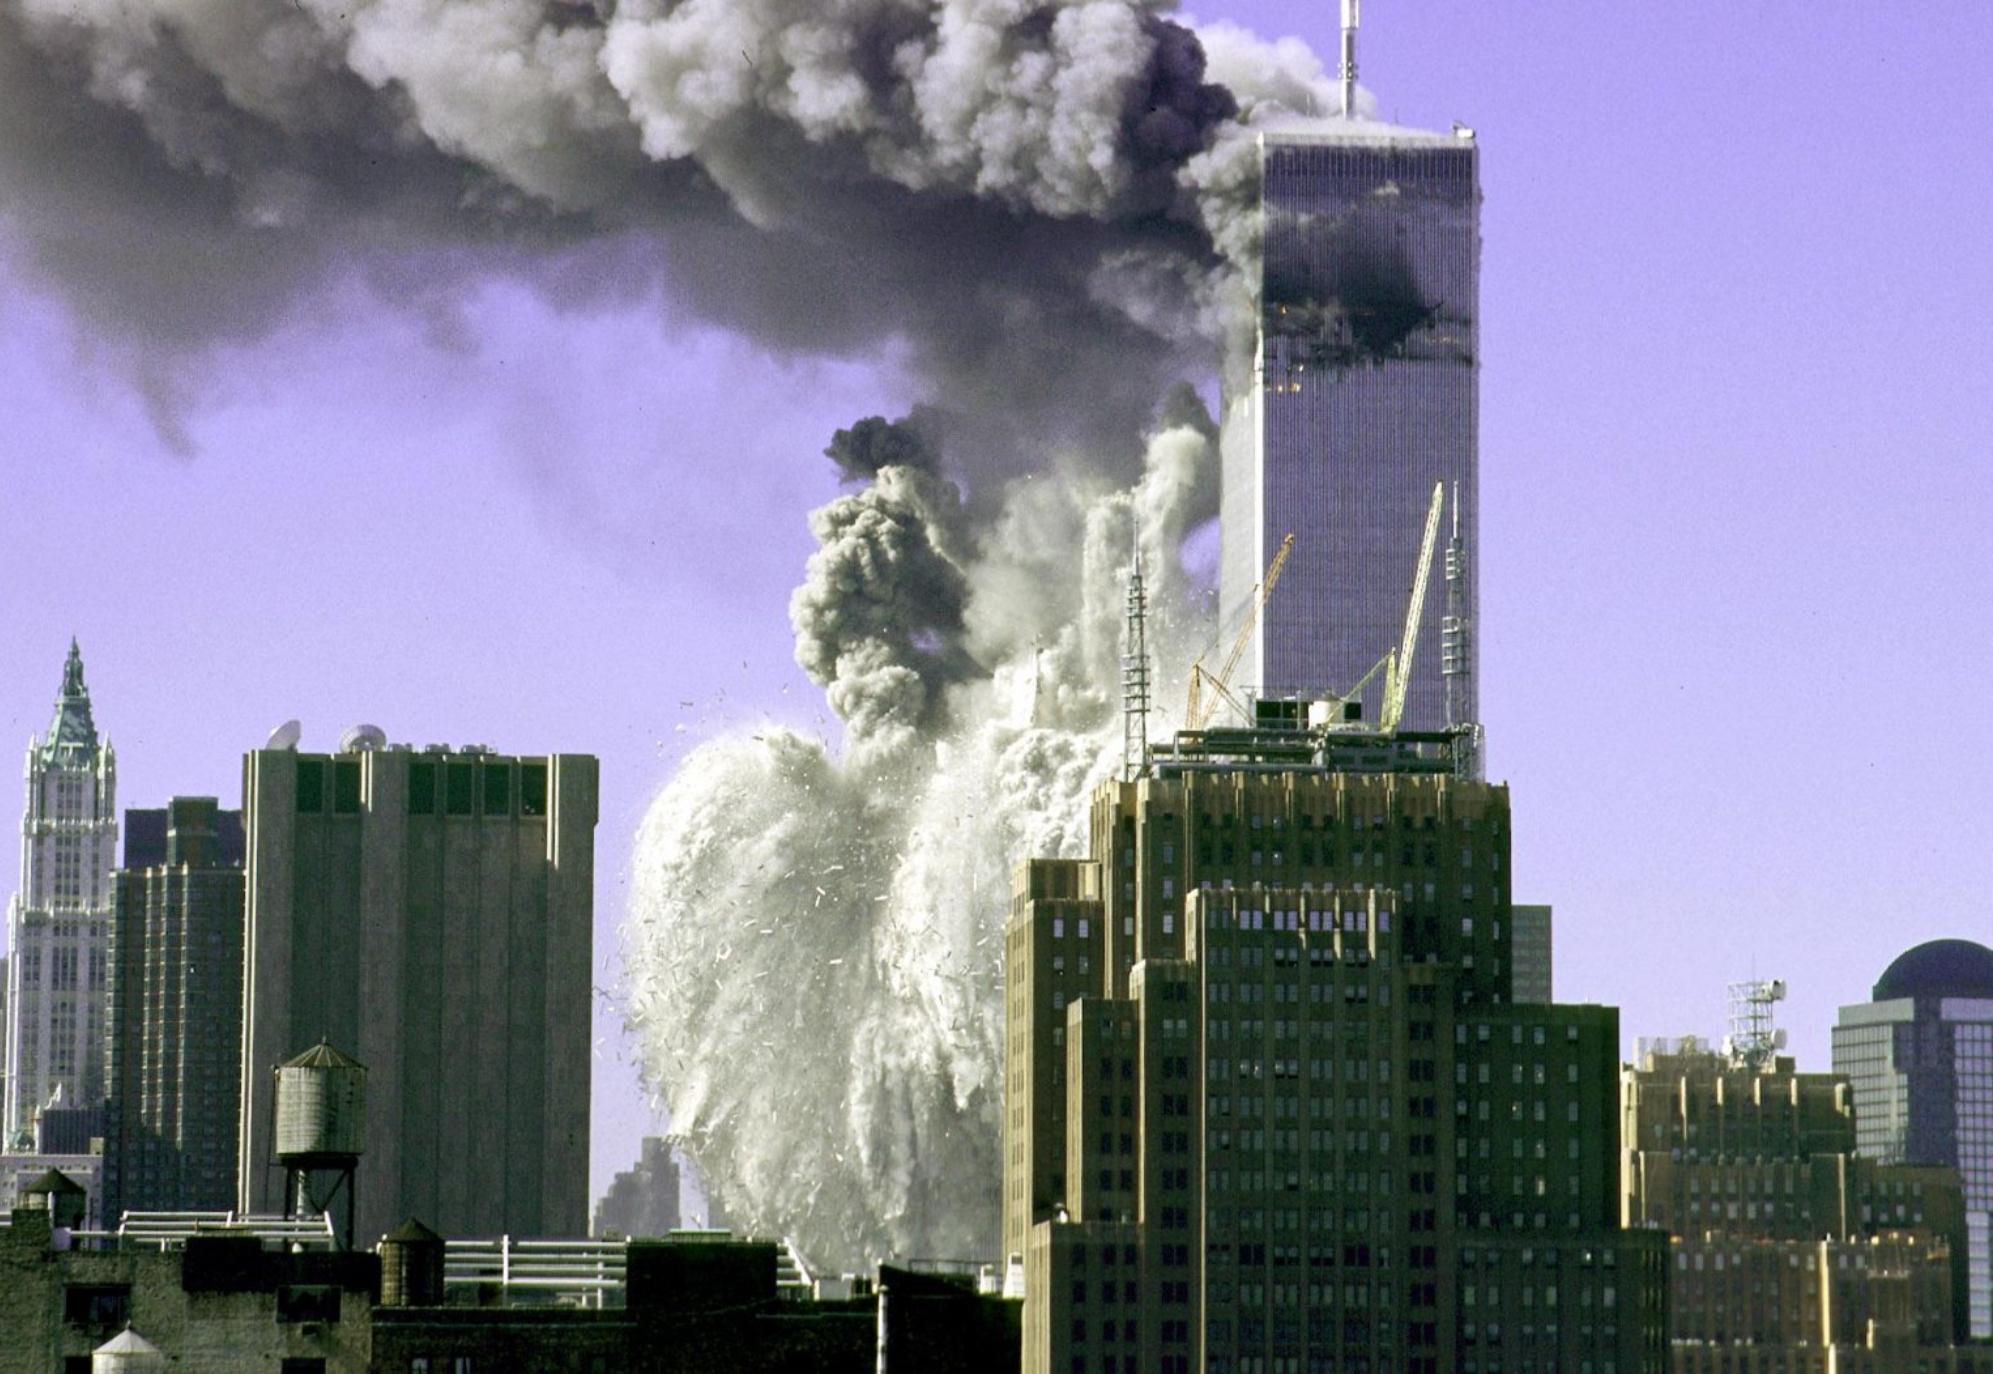 11η Σεπτεμβρίου: Το αποτρόπαιο τρομοκρατικό χτύπημα και οι θεωρίες συνωμοσίας που επικρατούν είκοσι δύο χρόνια μετά